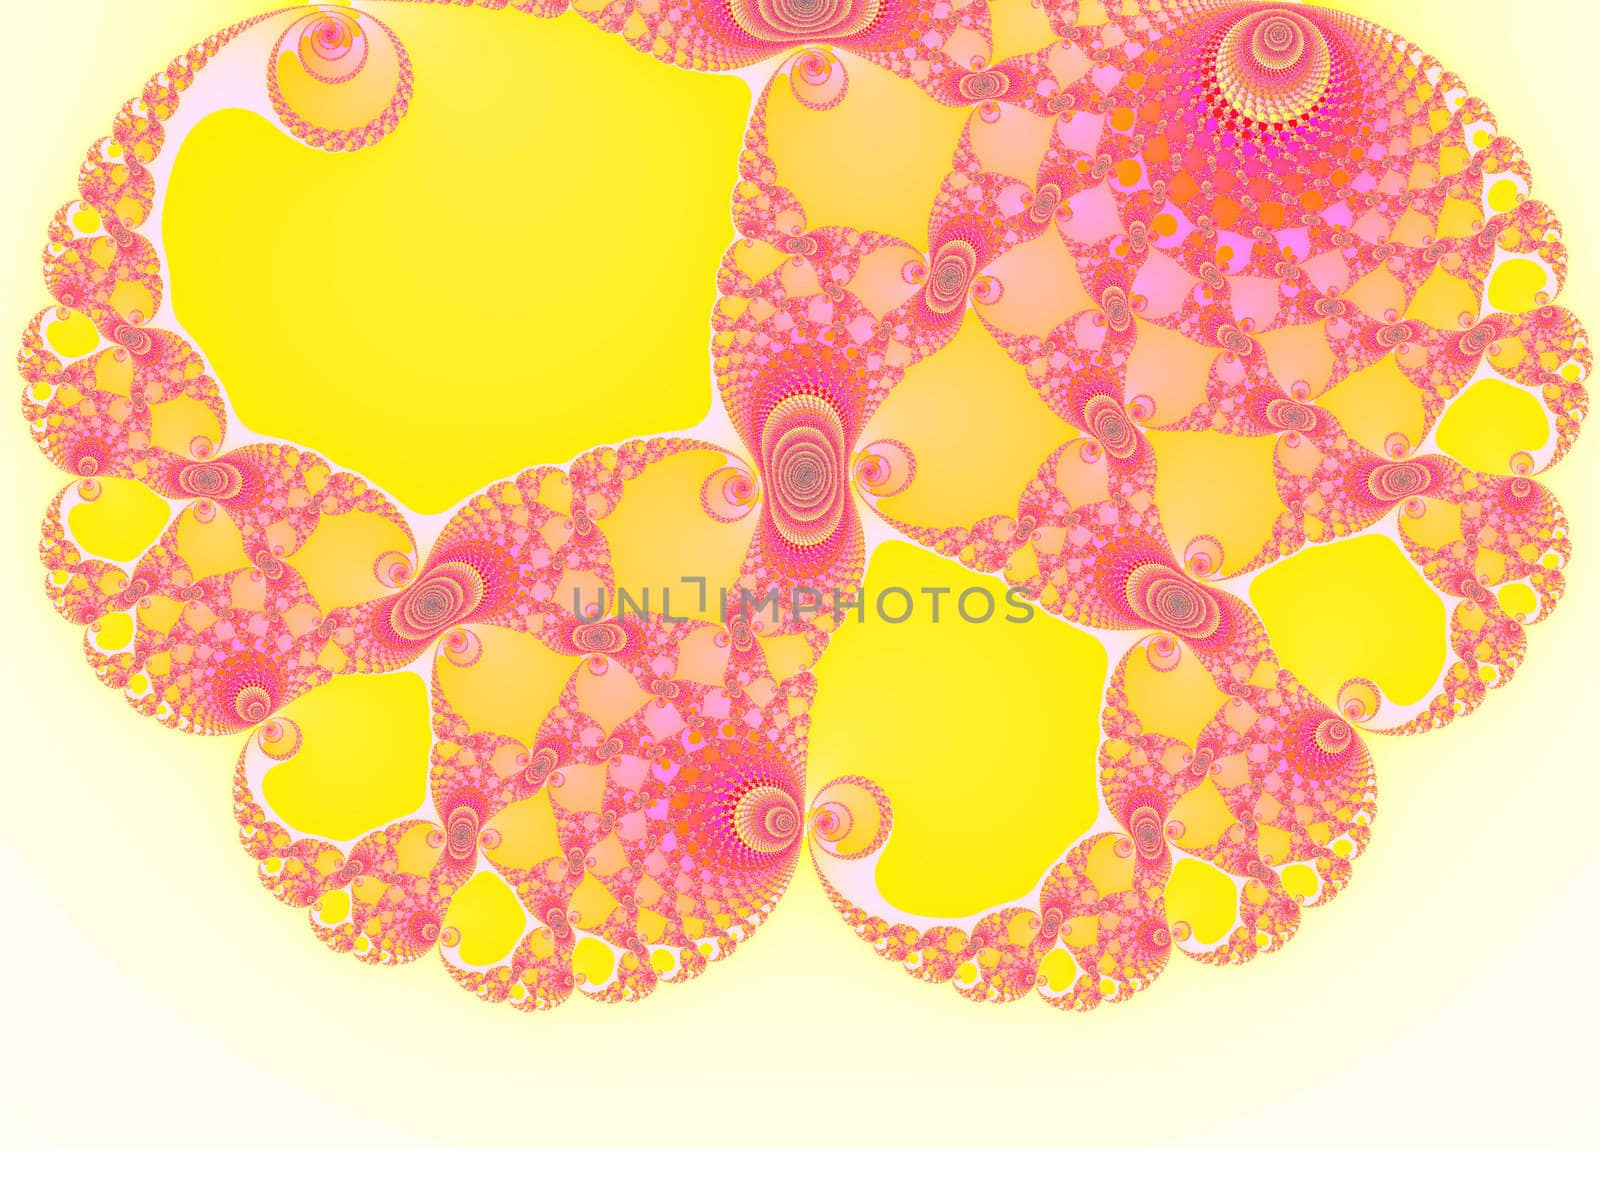 Brain Shape Light Pink Spiral Fractal 2d Pattern for Background Design